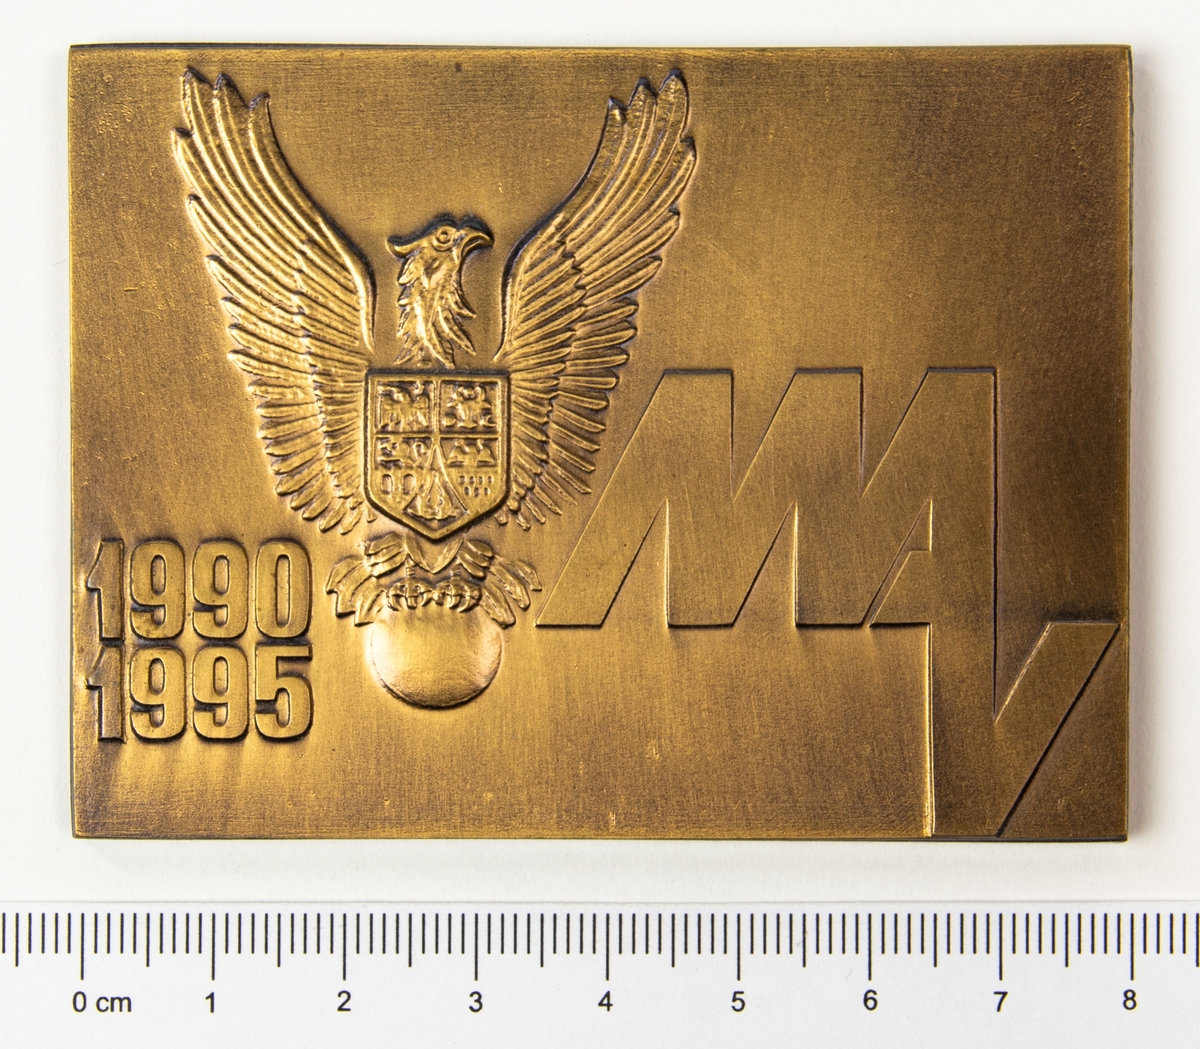 Minnesplakett med motiv av en örn med en sköld på bröstet och texten MAV, årtalen 1990 och 1995 på framsidan. På frånsidan texten Muzeul Aviatiei. Plaketten förvaras i en brun ask.